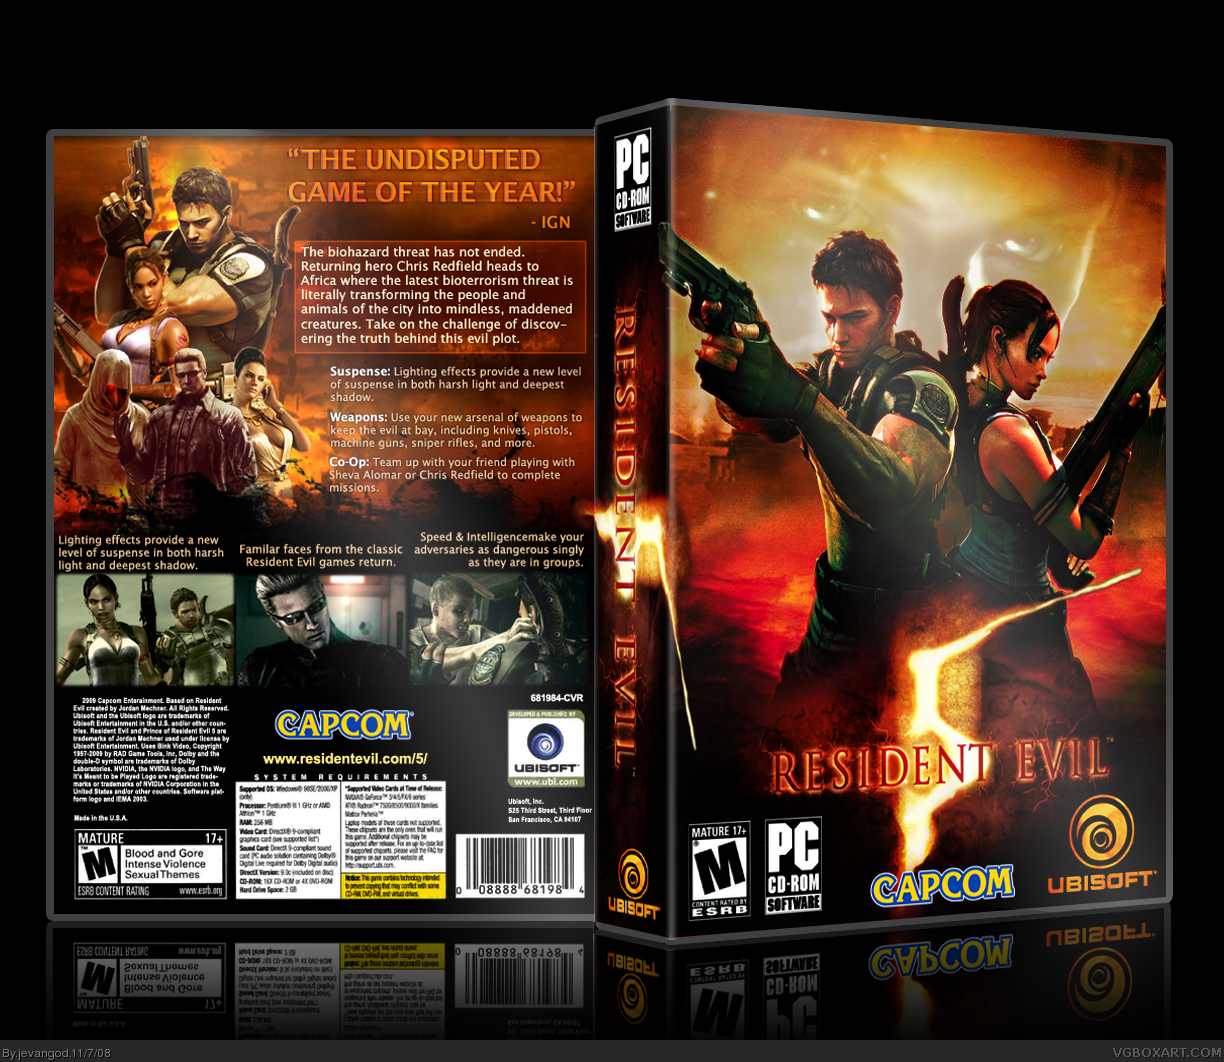 Resident evil 3 ps5. Resident Evil 4 диск ПК. Resident Evil 5 ps4 диск. Resident Evil 5 (PC). Resident Evil 5 диск PC обложка.